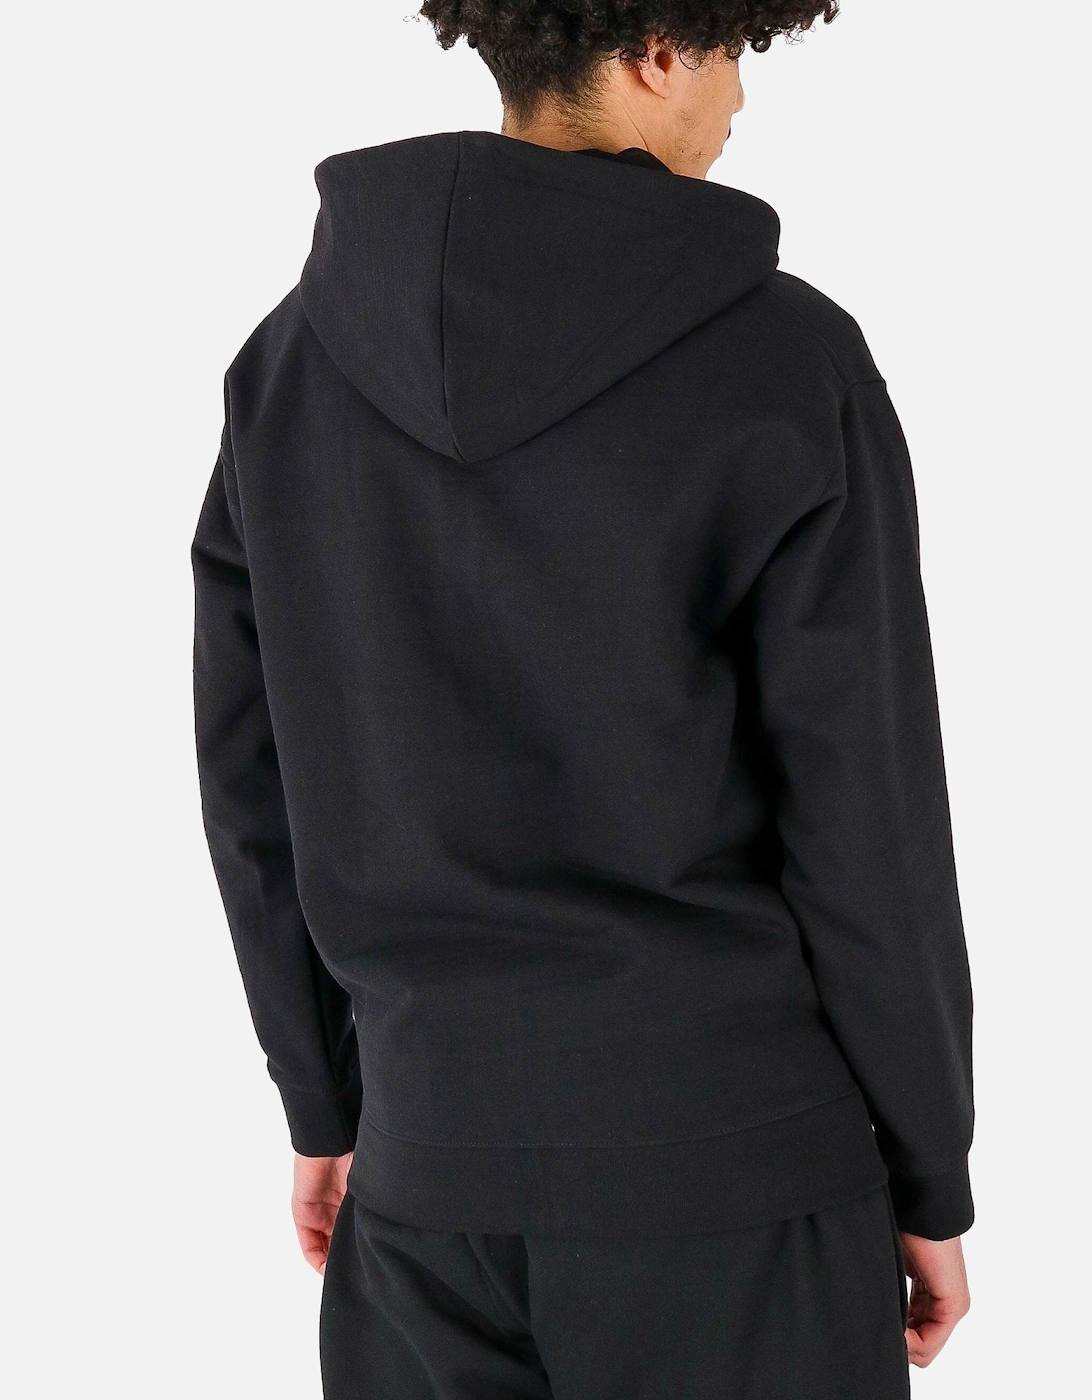 For The Chosen Zip Hoddie Black Sweatshirt